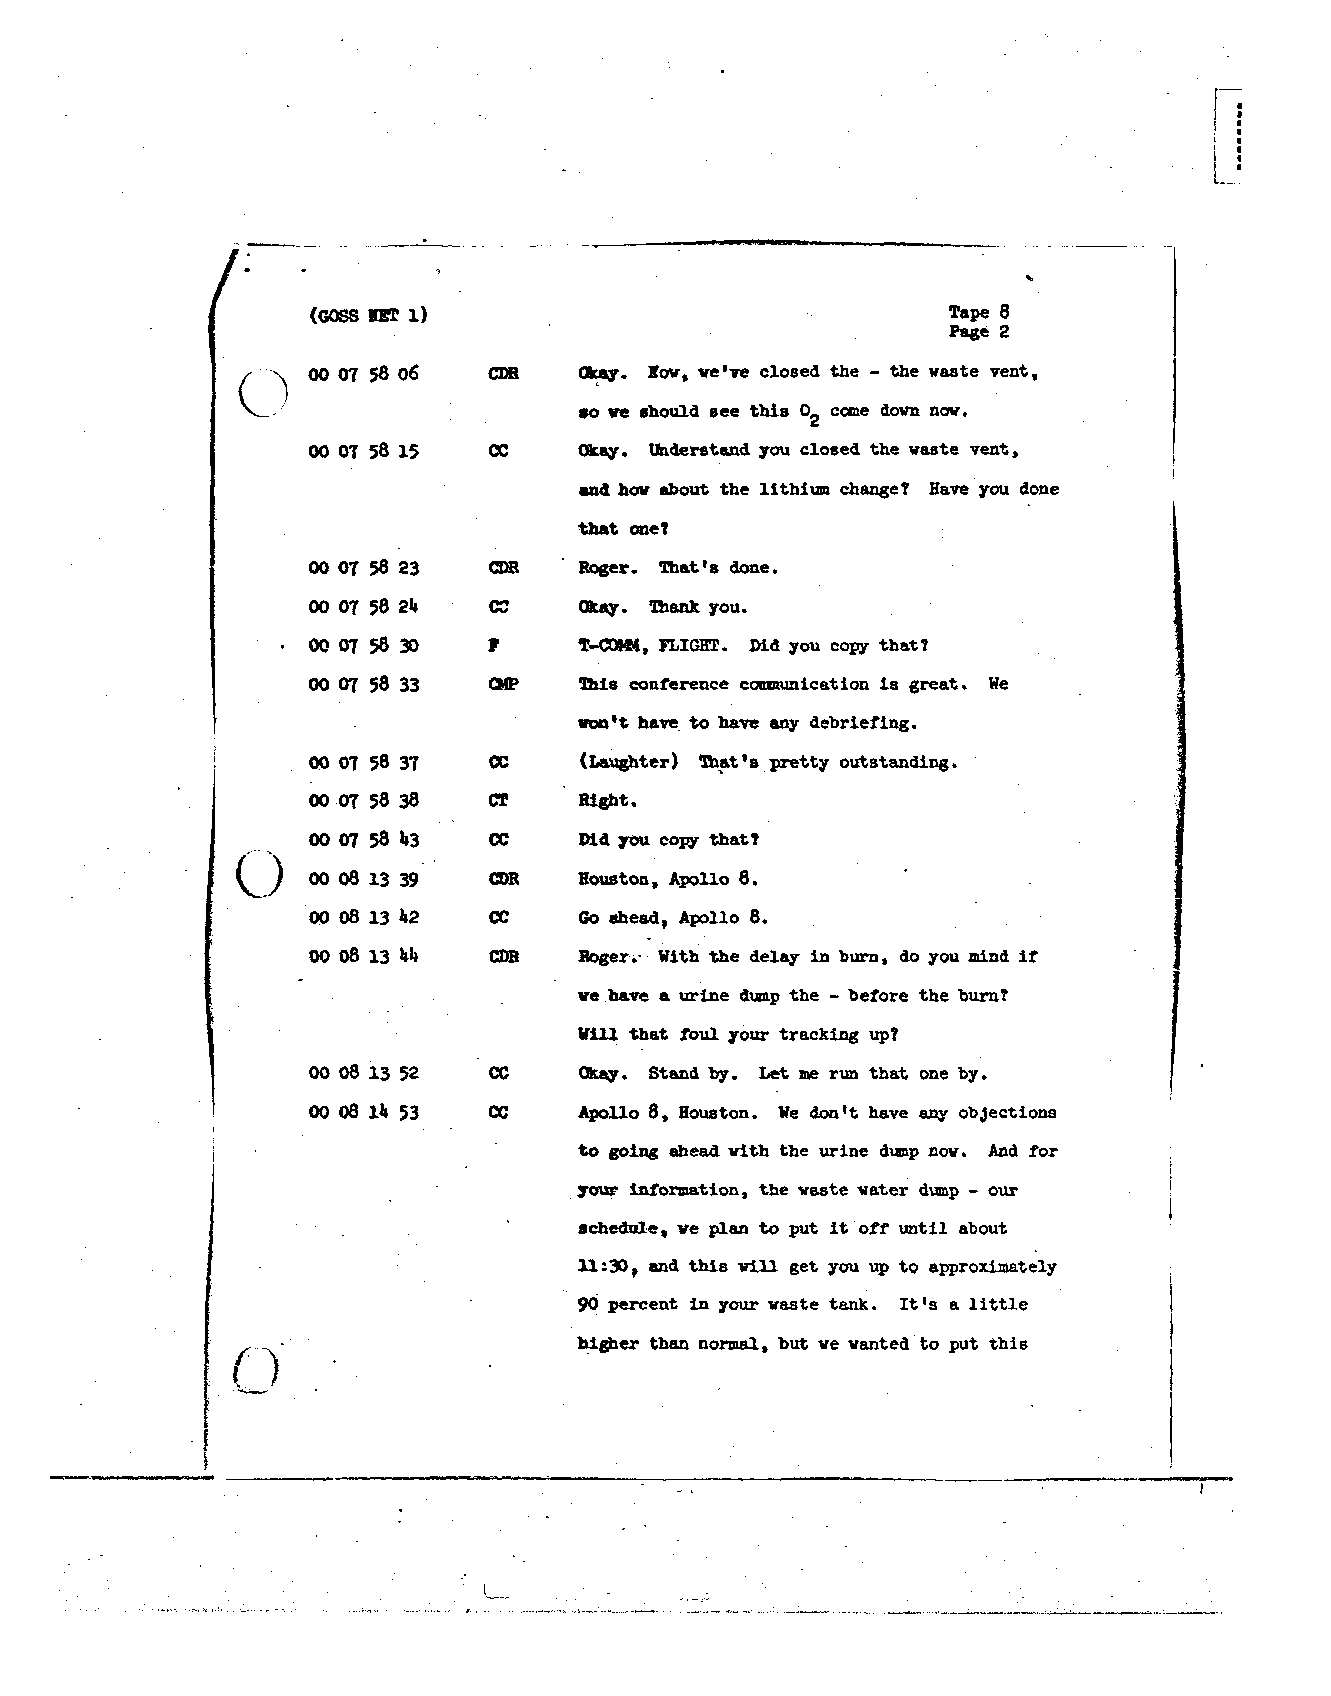 Page 74 of Apollo 8’s original transcript